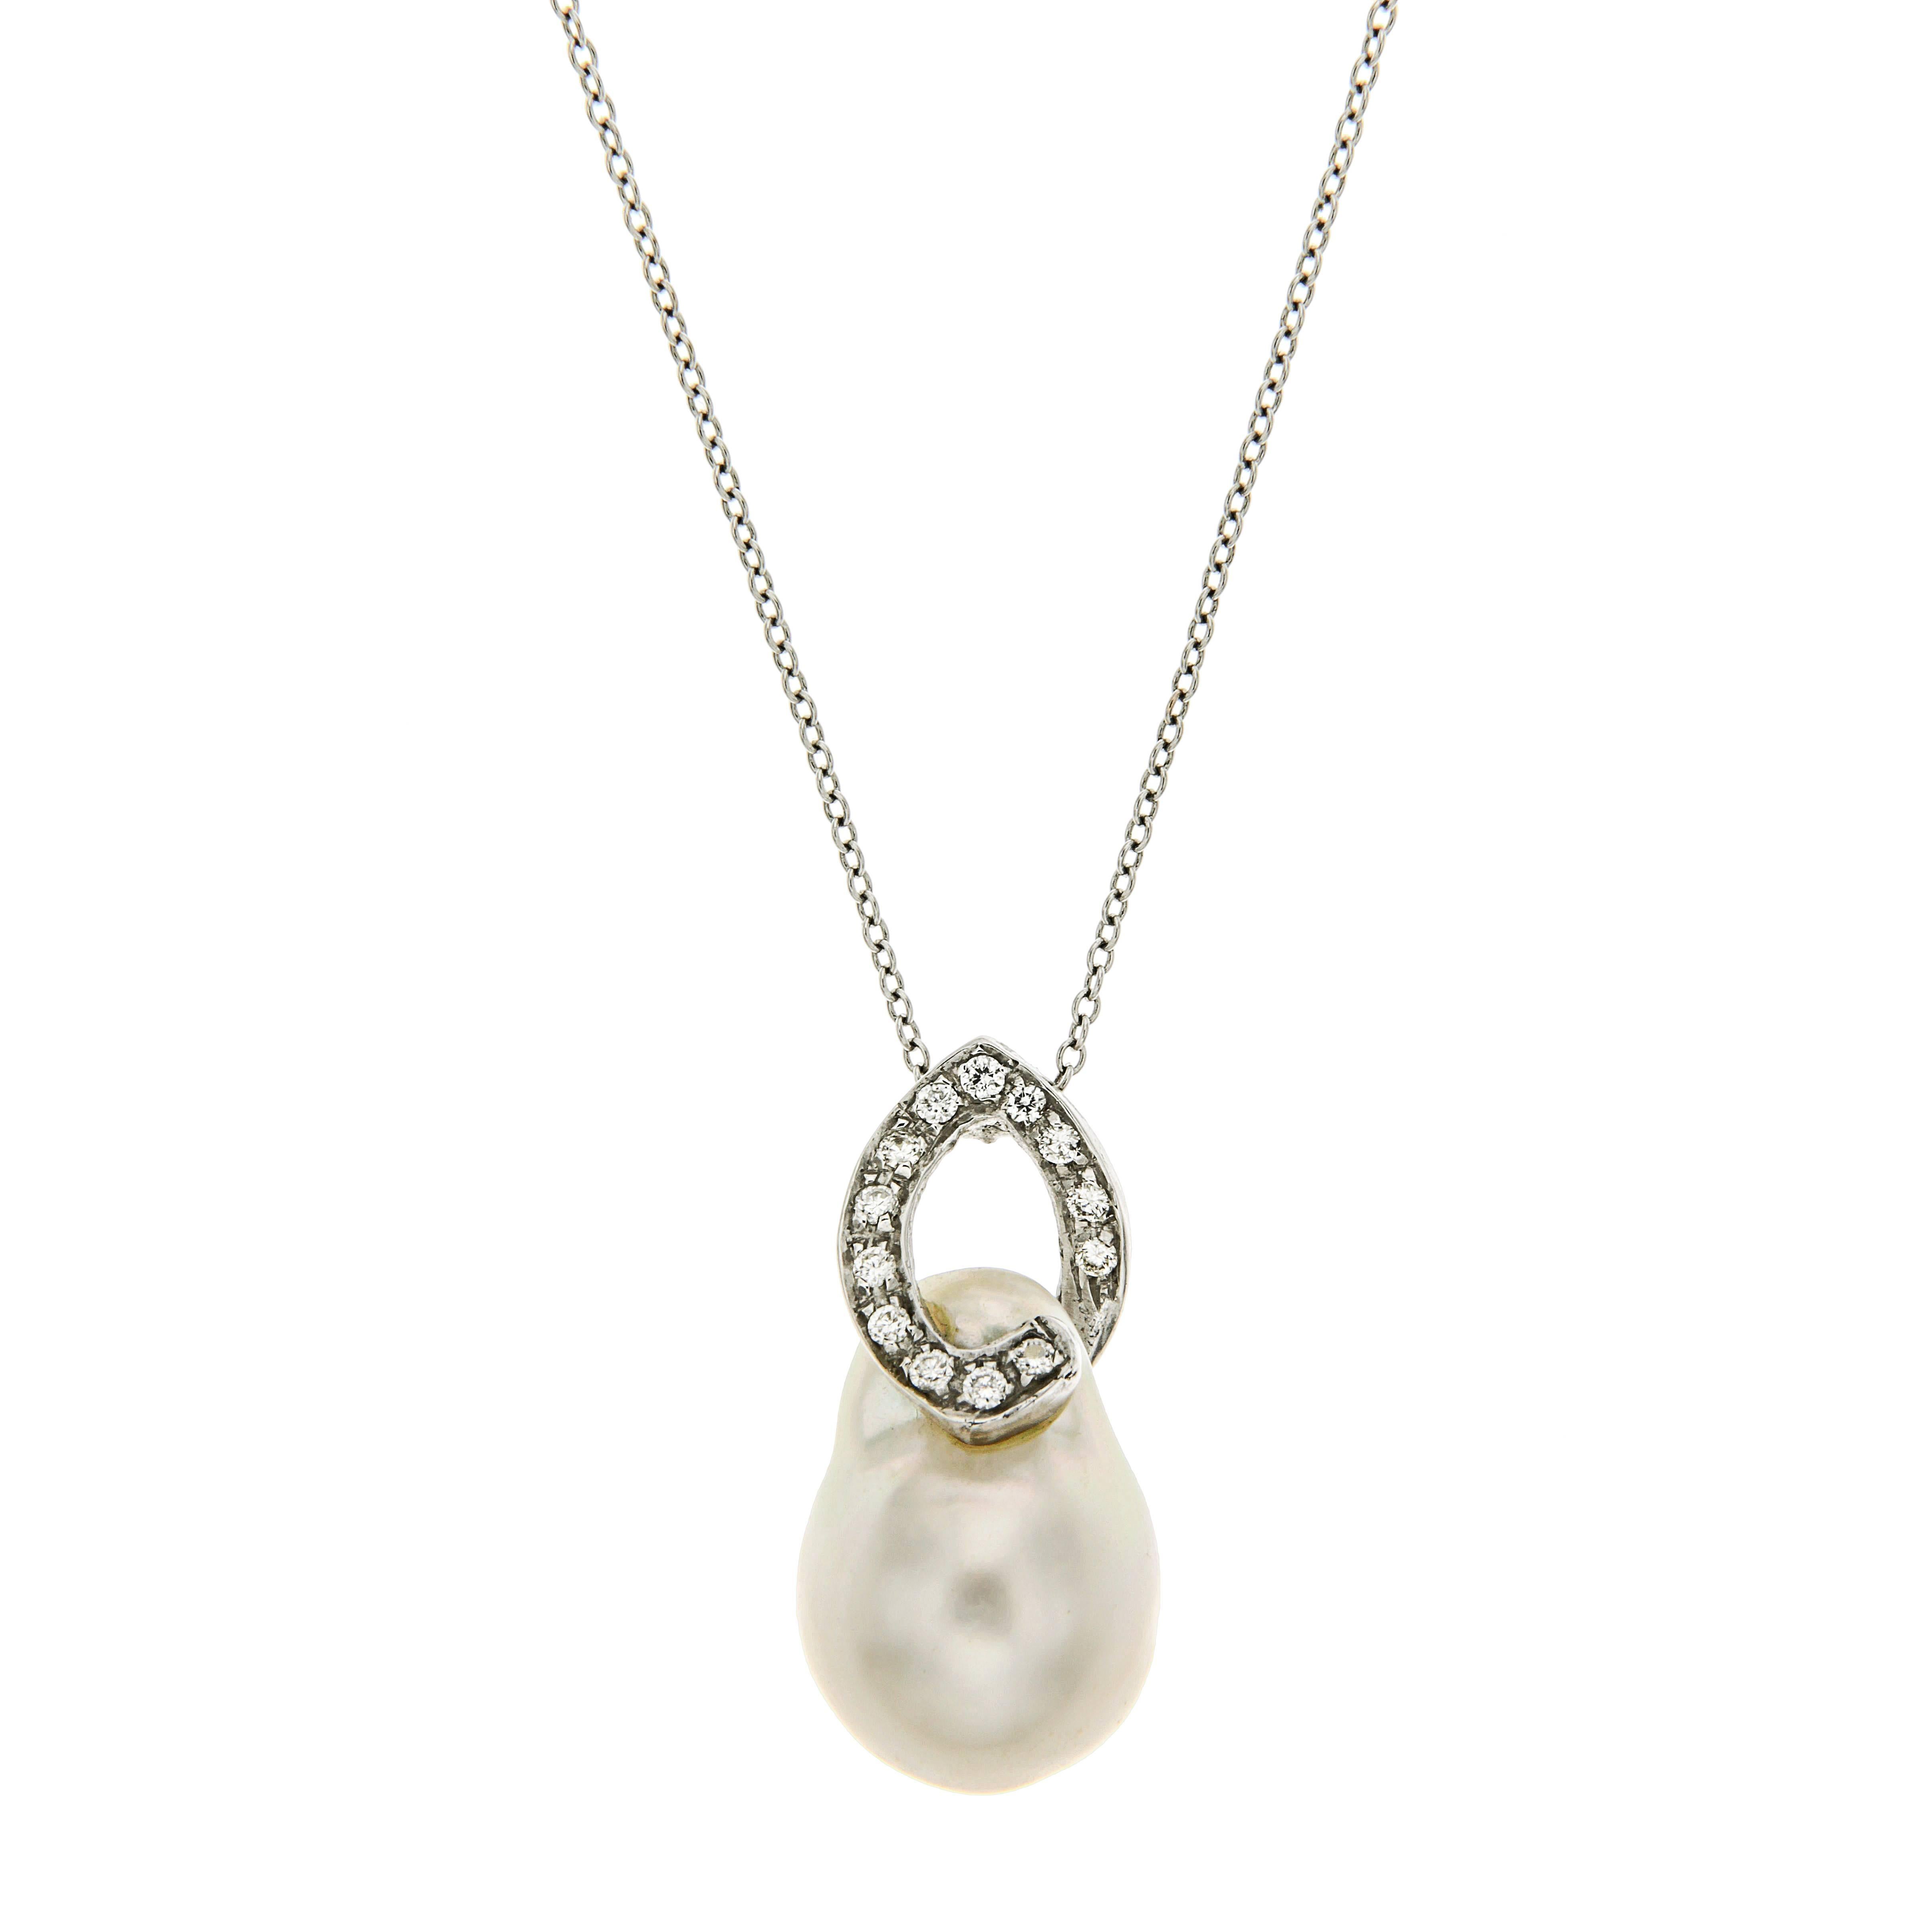 Collier en or blanc 18 carats avec perles d'Australie et diamants, fait  la main